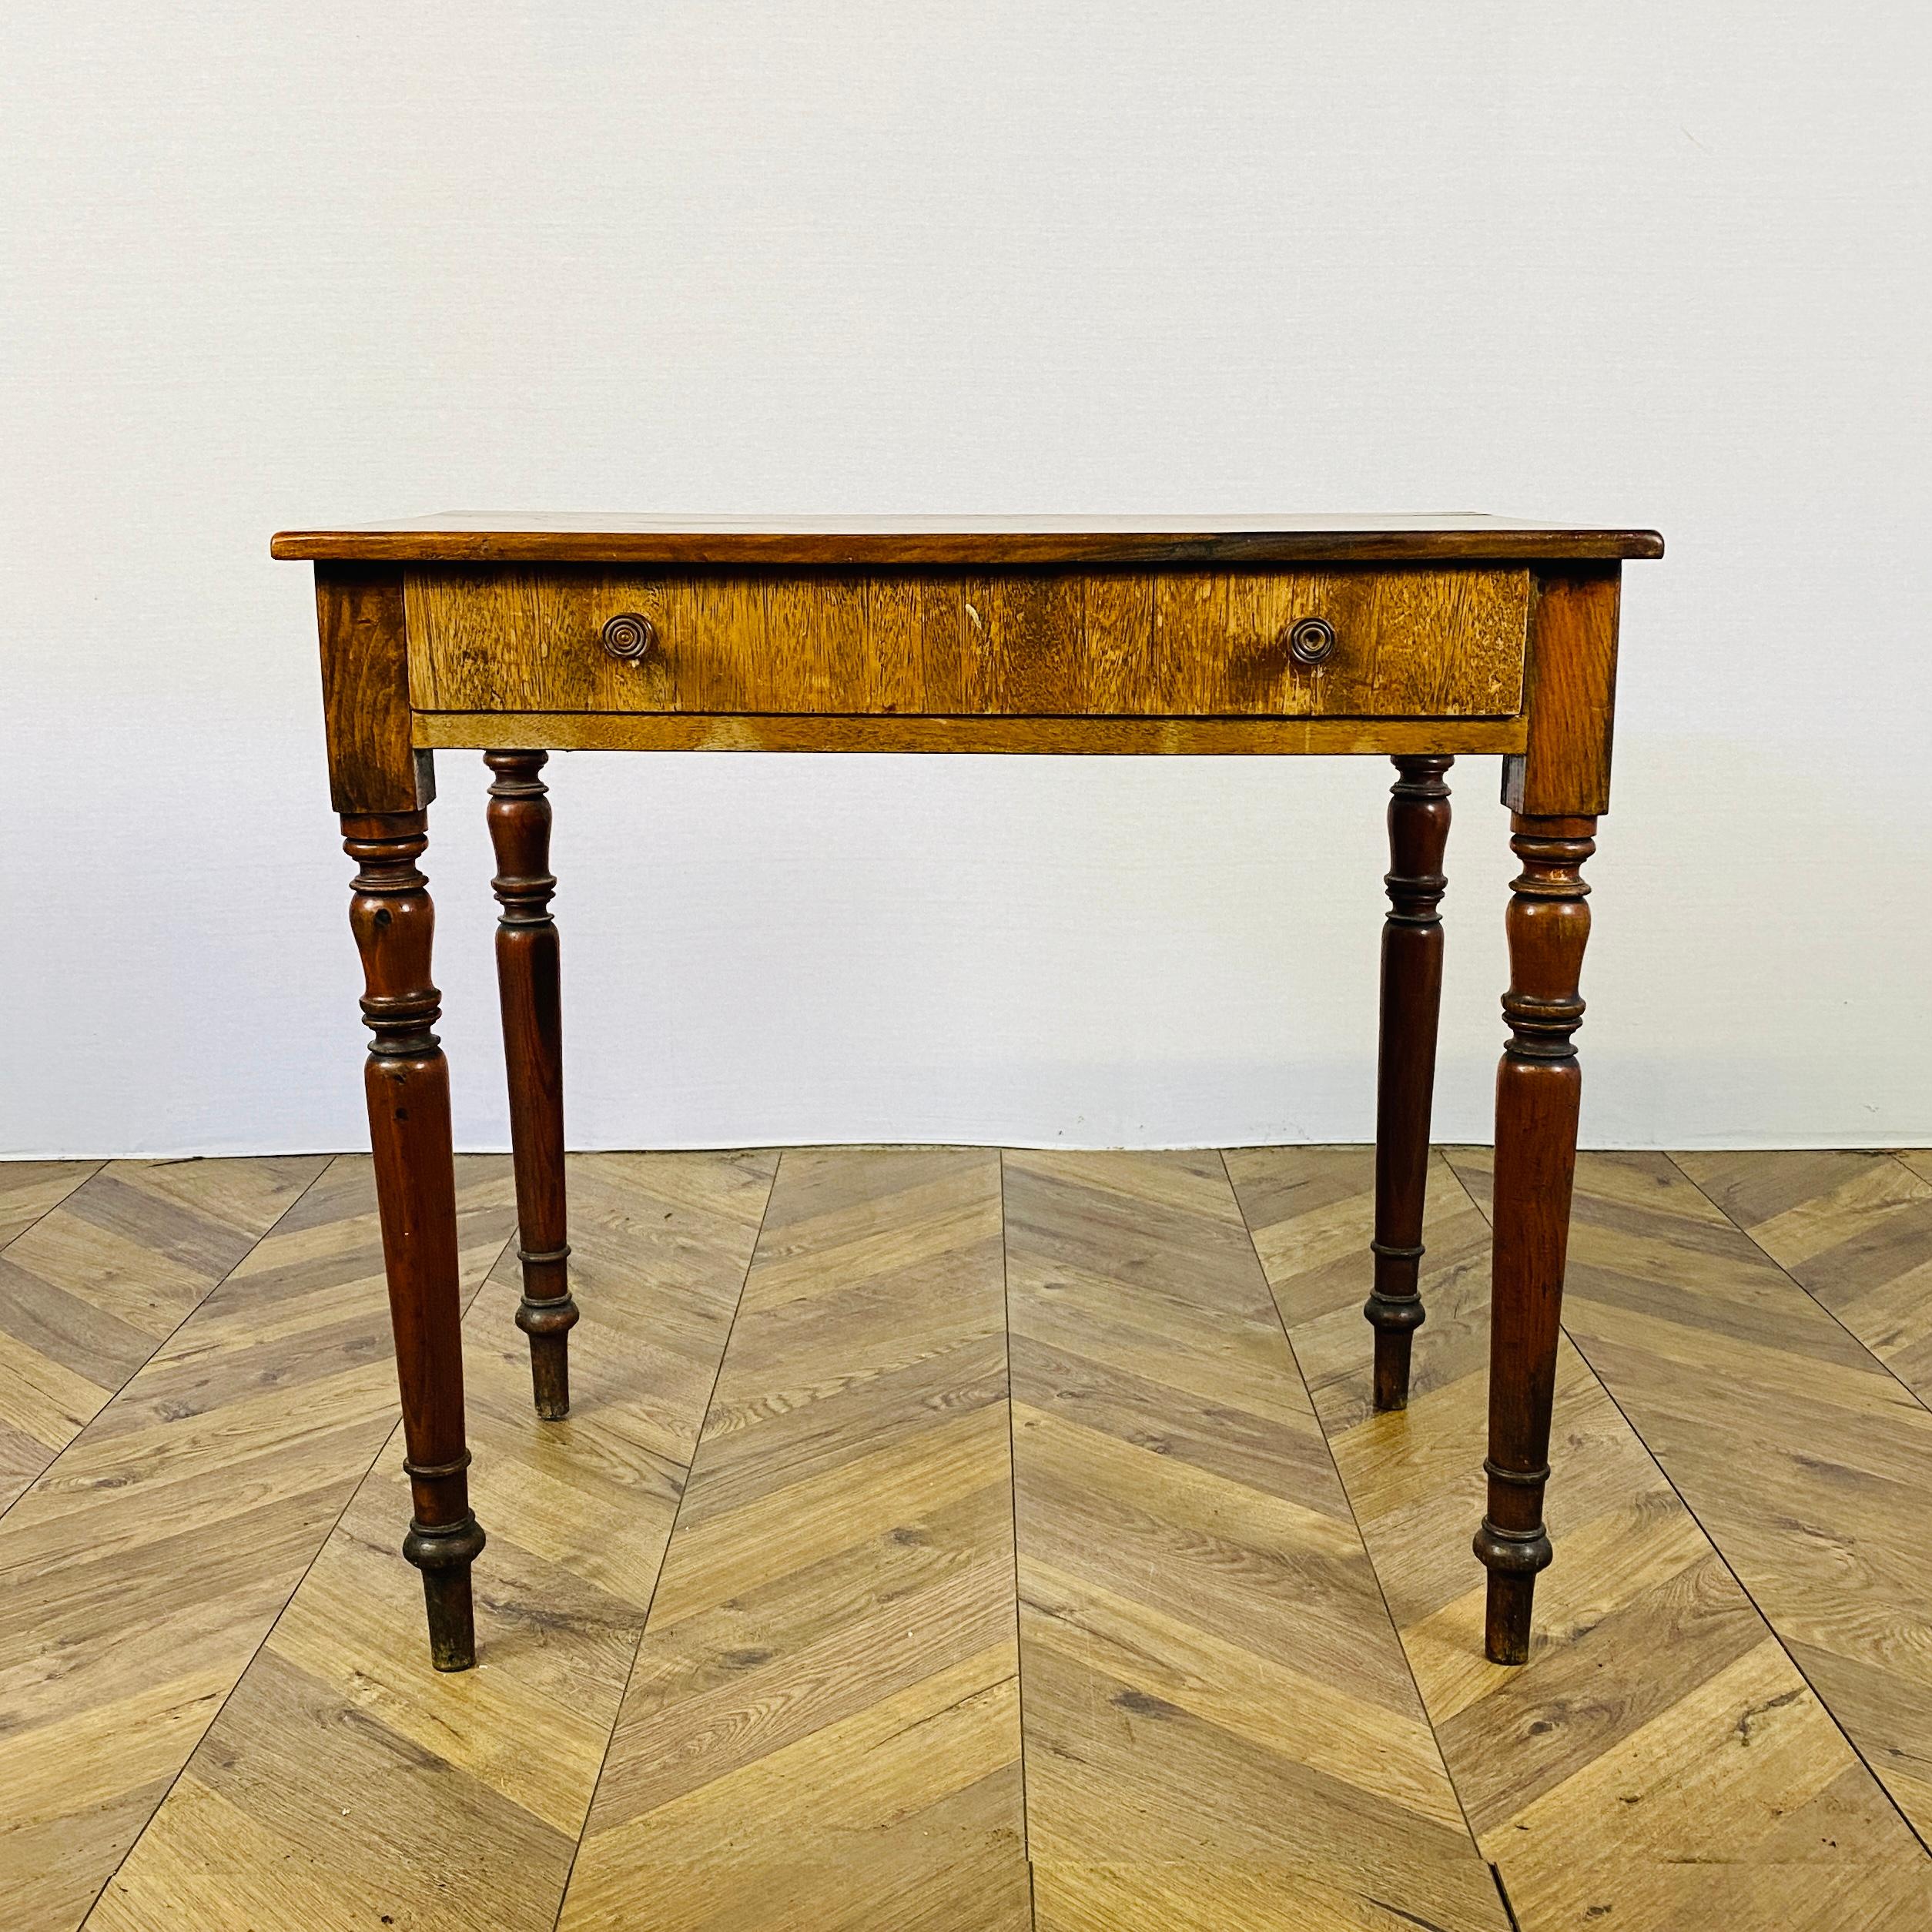 Eine schöne antike einzelne Schublade Schreibtisch oder Beistelltisch. ca. 1820s

Der Tisch ist aus Eichenholz gefertigt und steht auf gedrechselten Beinen. Er hat eine gute Farbe und Patina und schöne Proportionen.

Strukturell ist der Tisch in